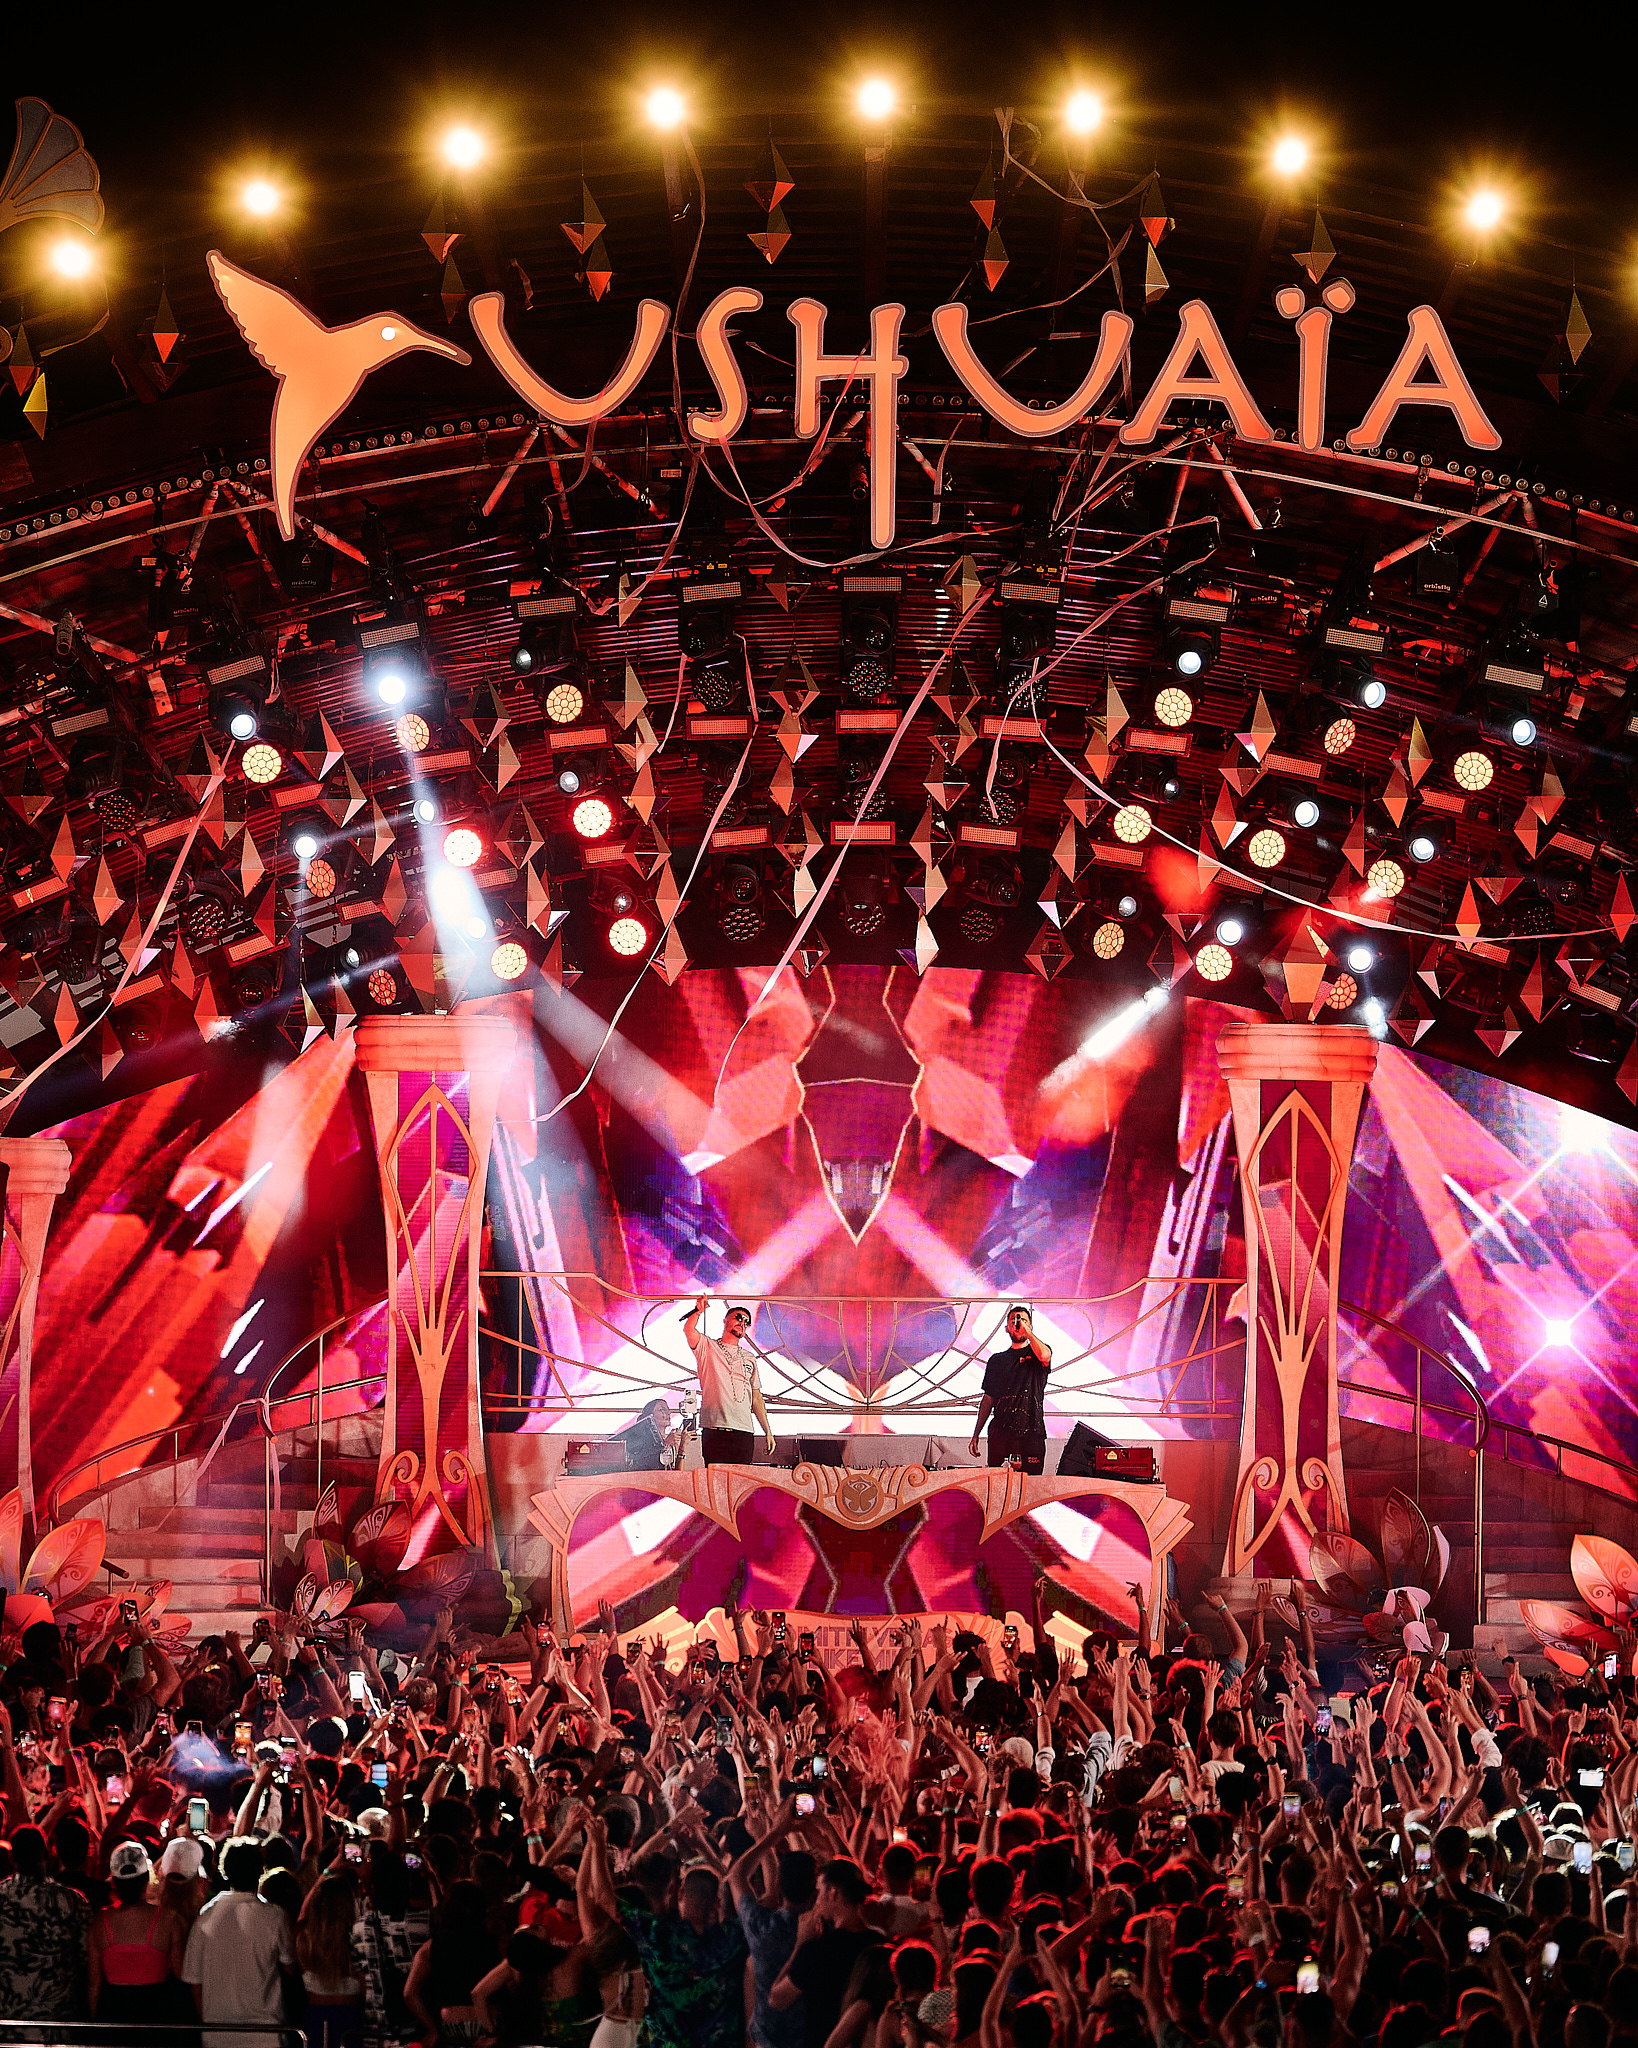 Temukan “Tomorrowland Presents Dimitri Vegas & Like Mike” di Susunan Musim Panas Ushuaïa Ibiza